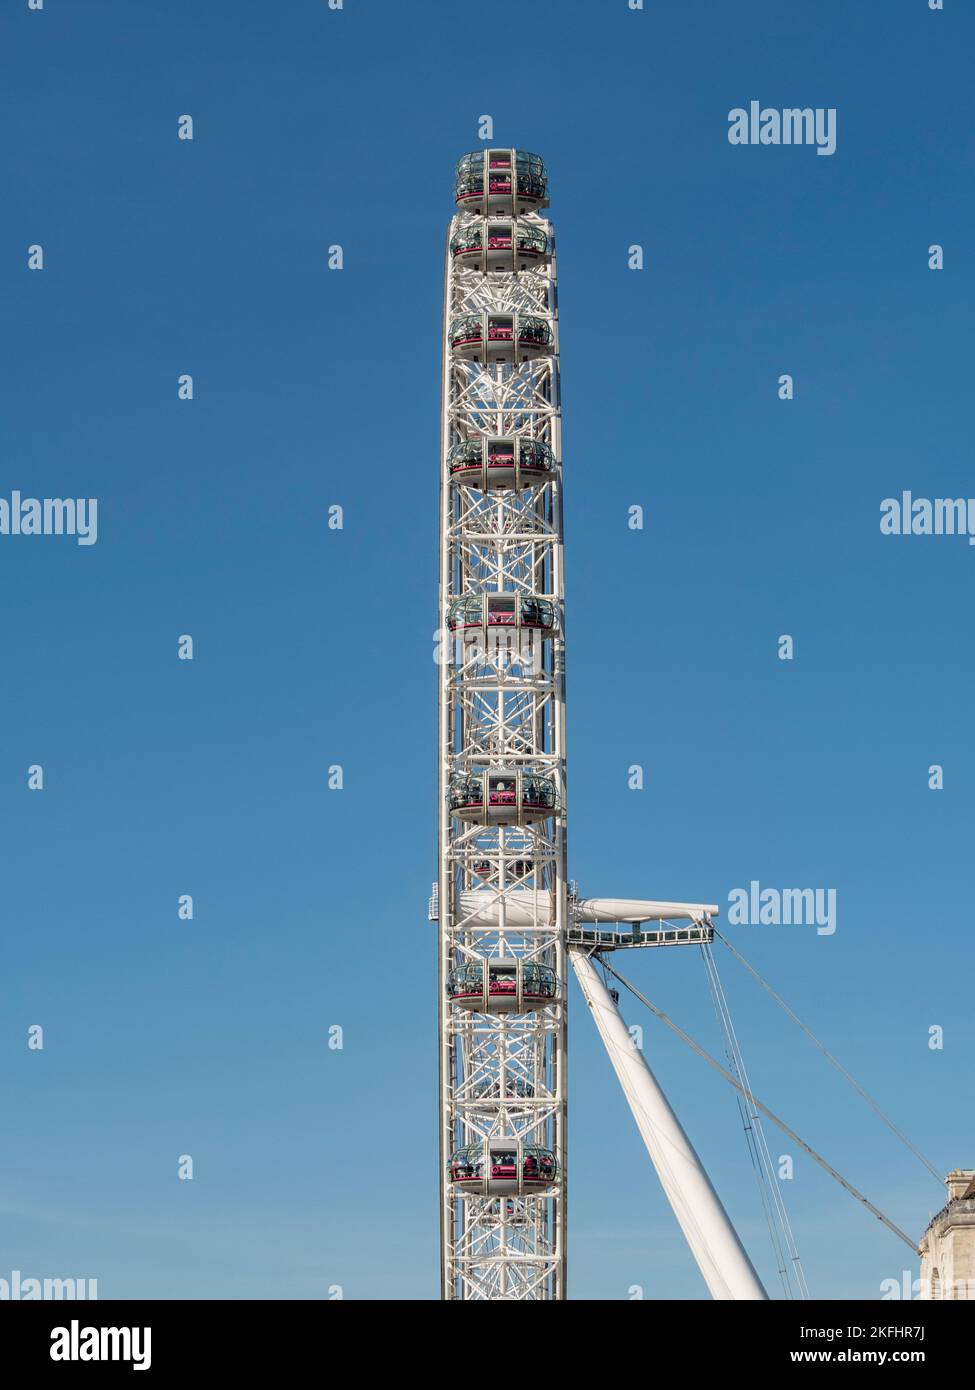 Vista de cerca de los podes de pasajeros en el London Eye, Londres, Reino Unido. Foto de stock